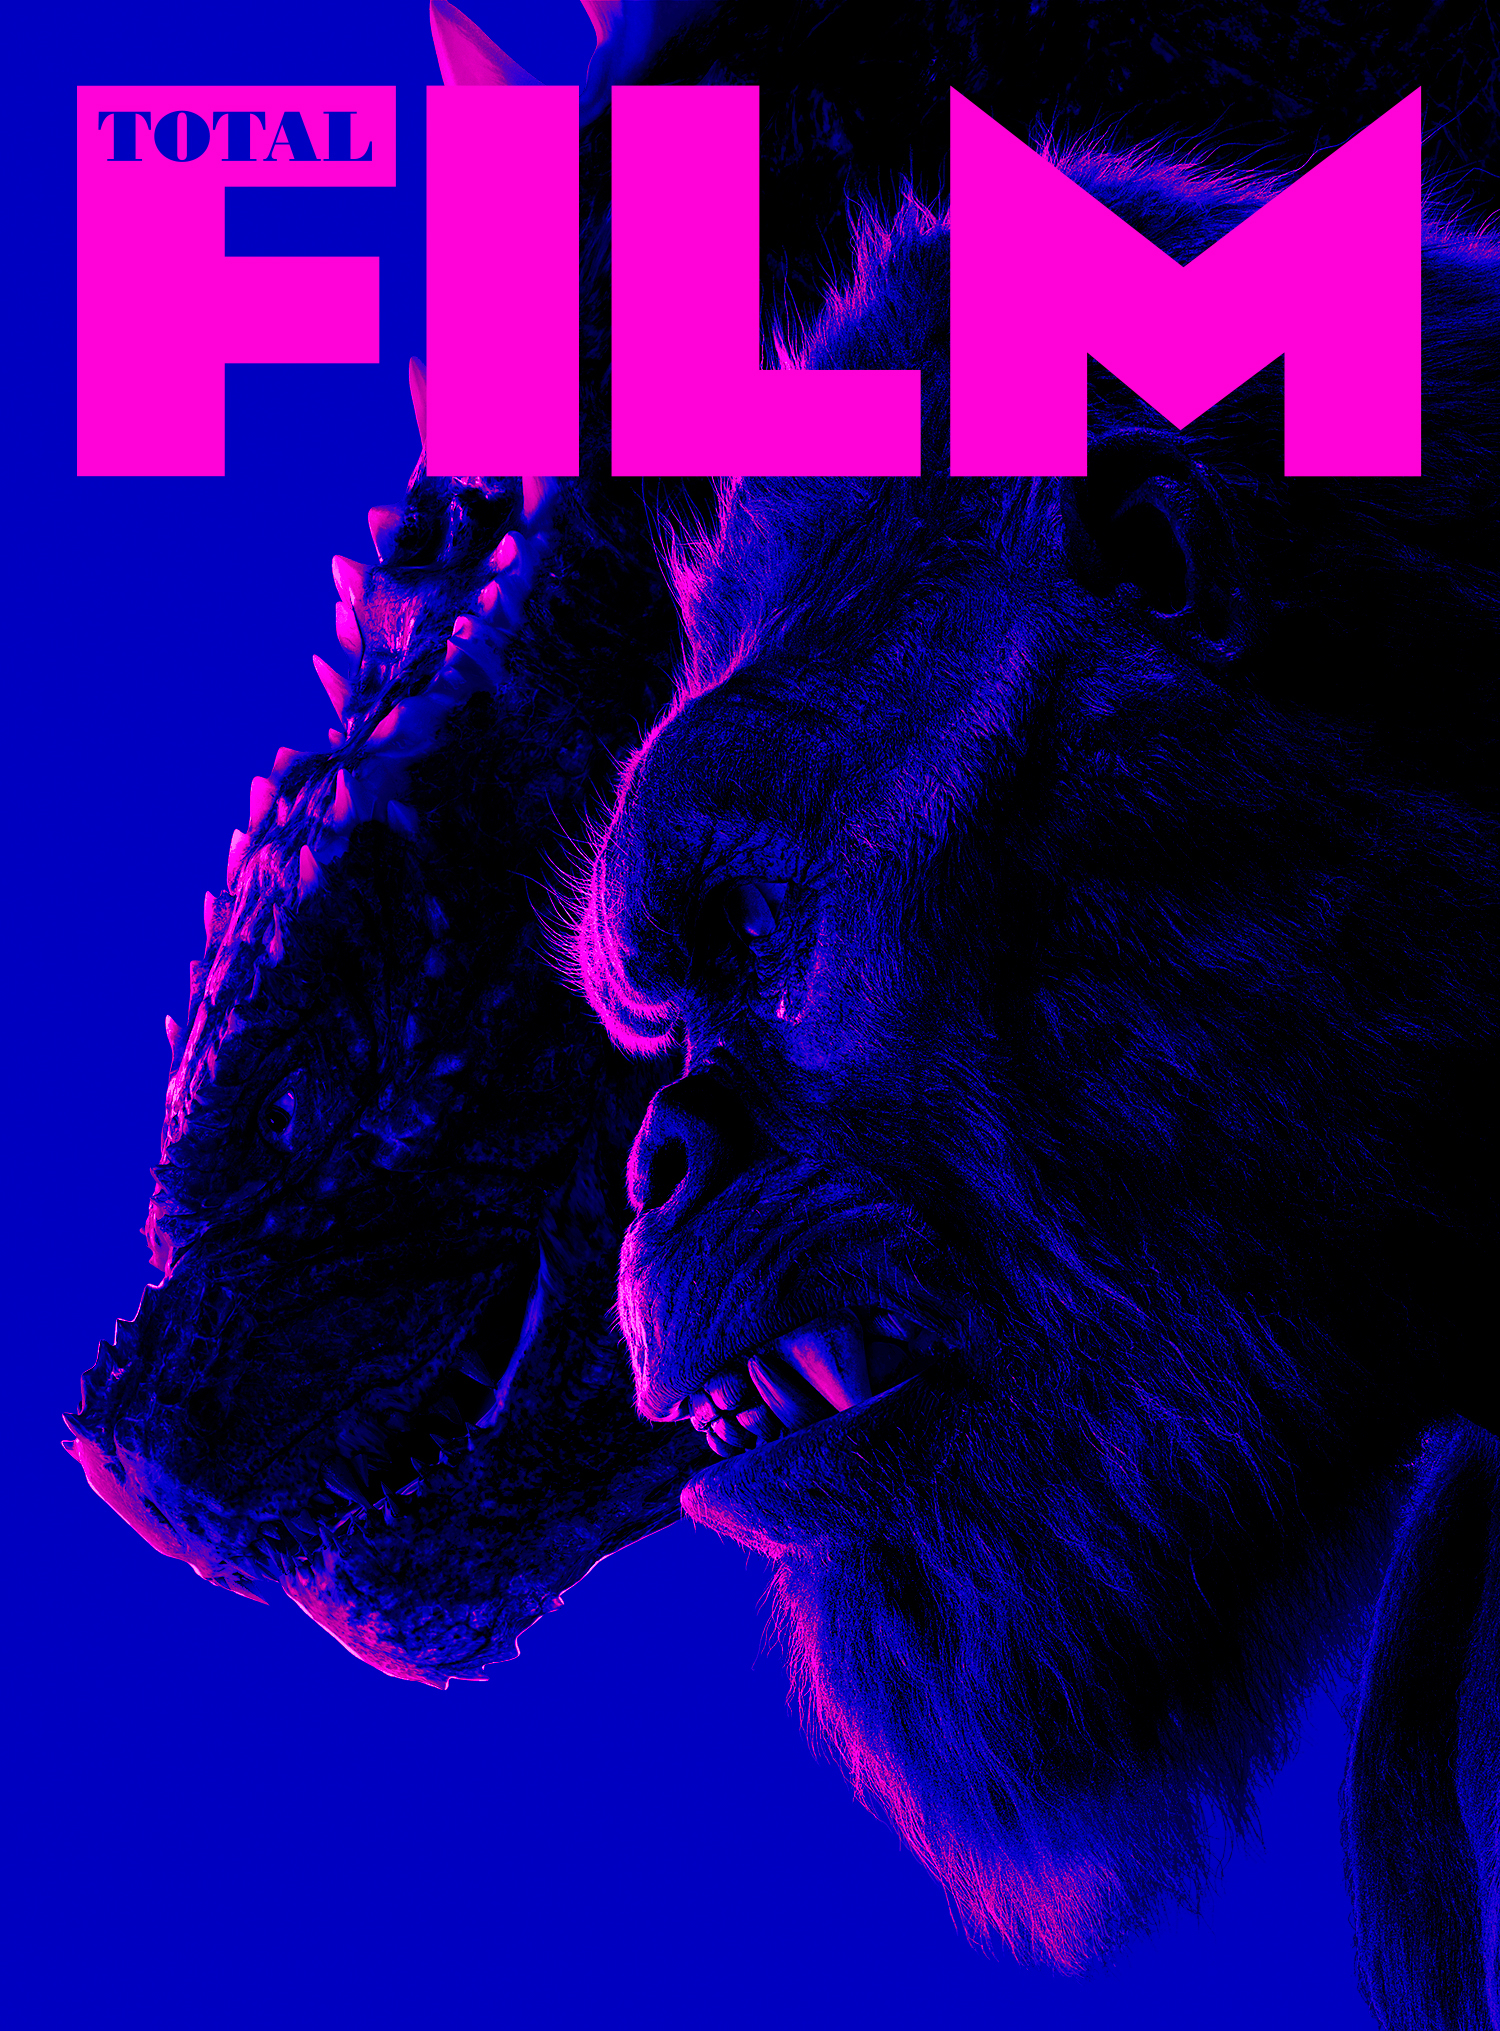 Capa de Godzilla x Kong para subscritores da Total Film